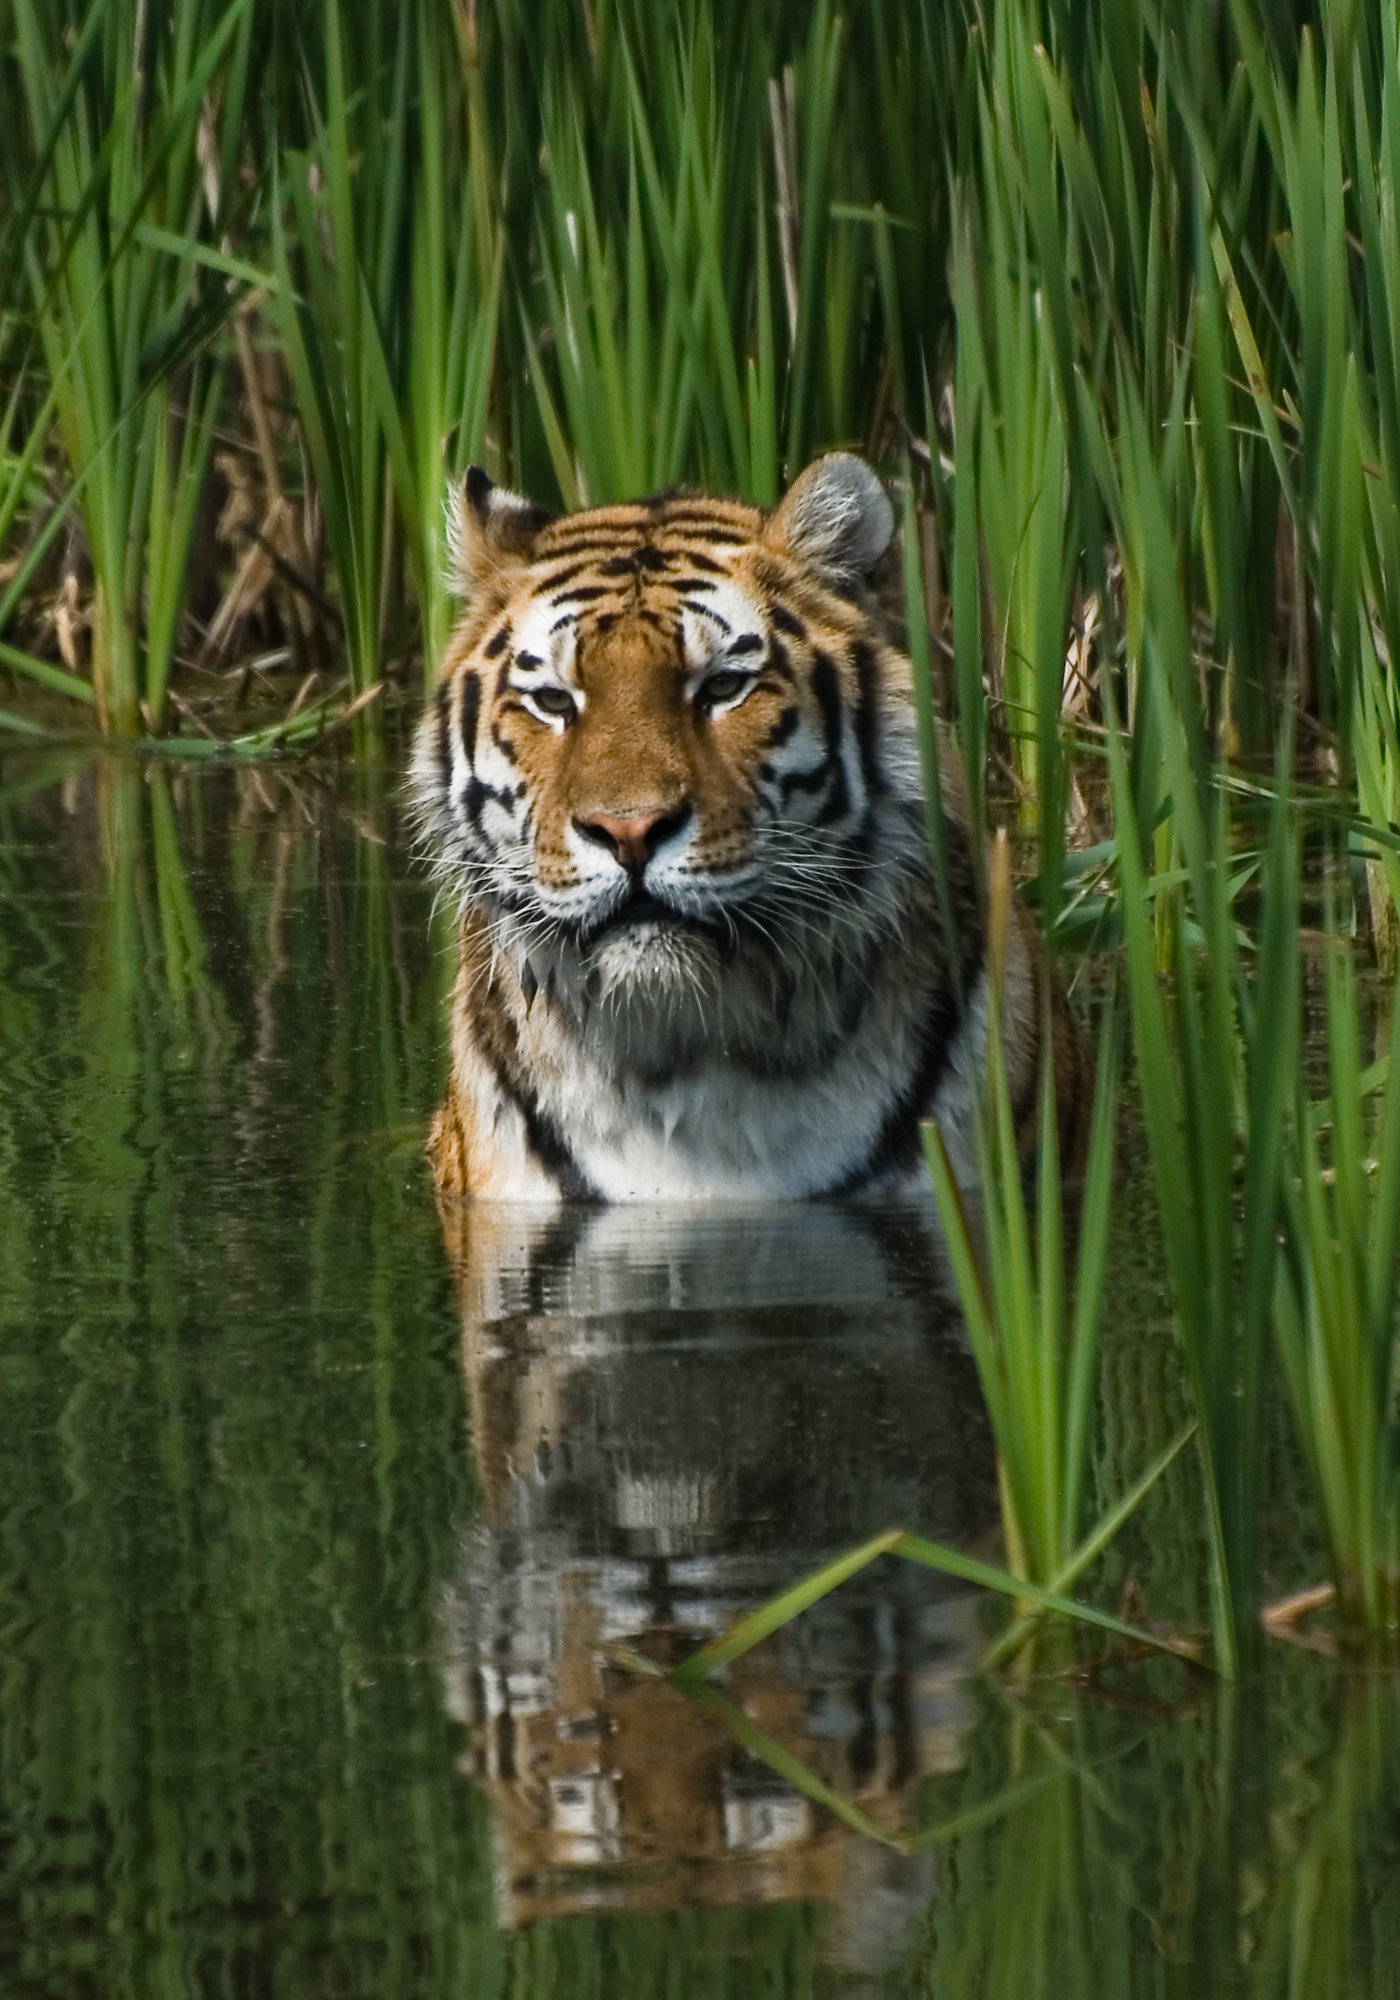 Tiger - Wikipedia